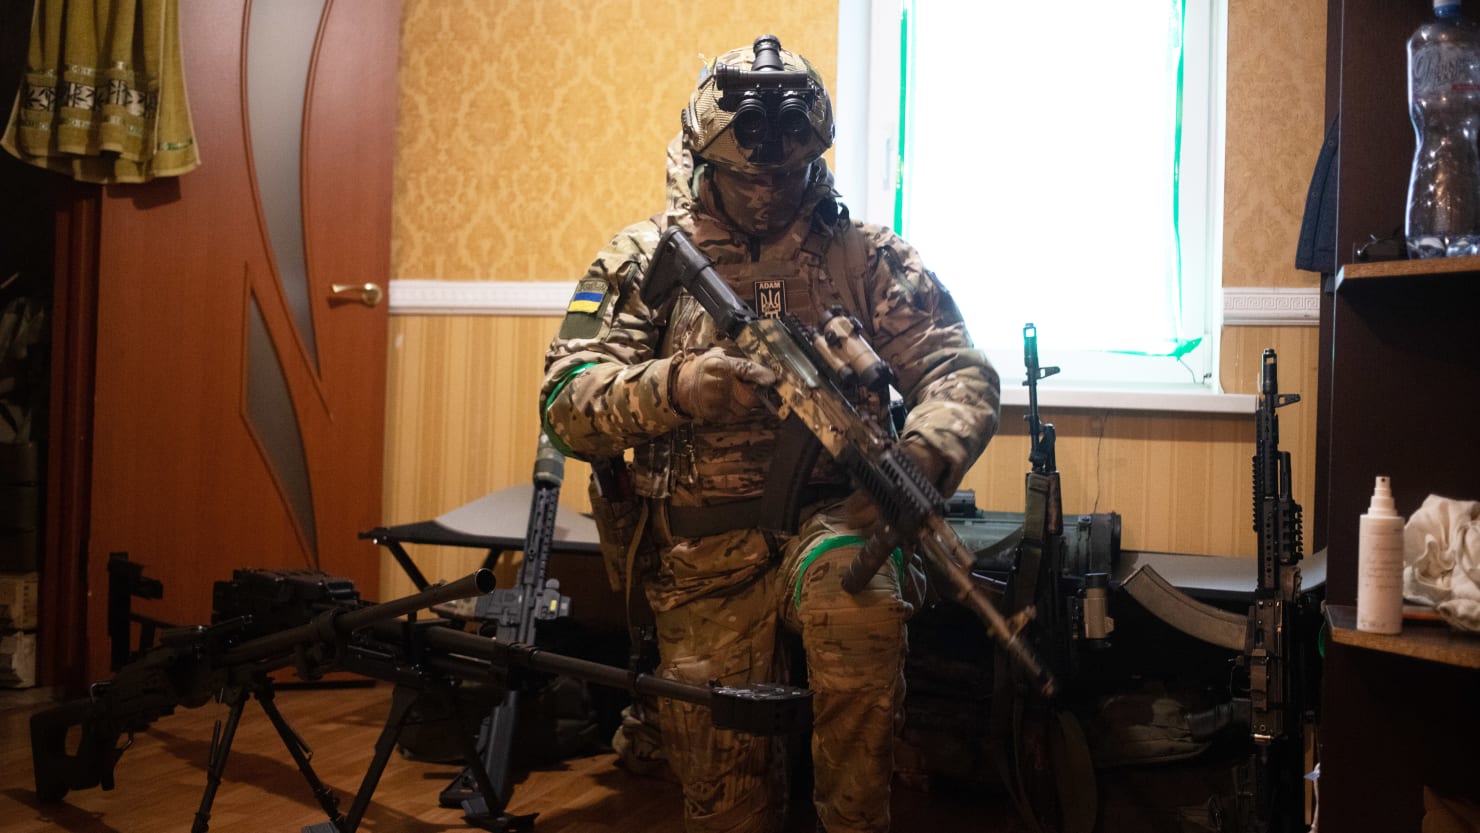 Bojownicy czeczeńscy zawarli pakt wojenny z wojskami ukraińskimi w celu walki z Władimirem Putinem